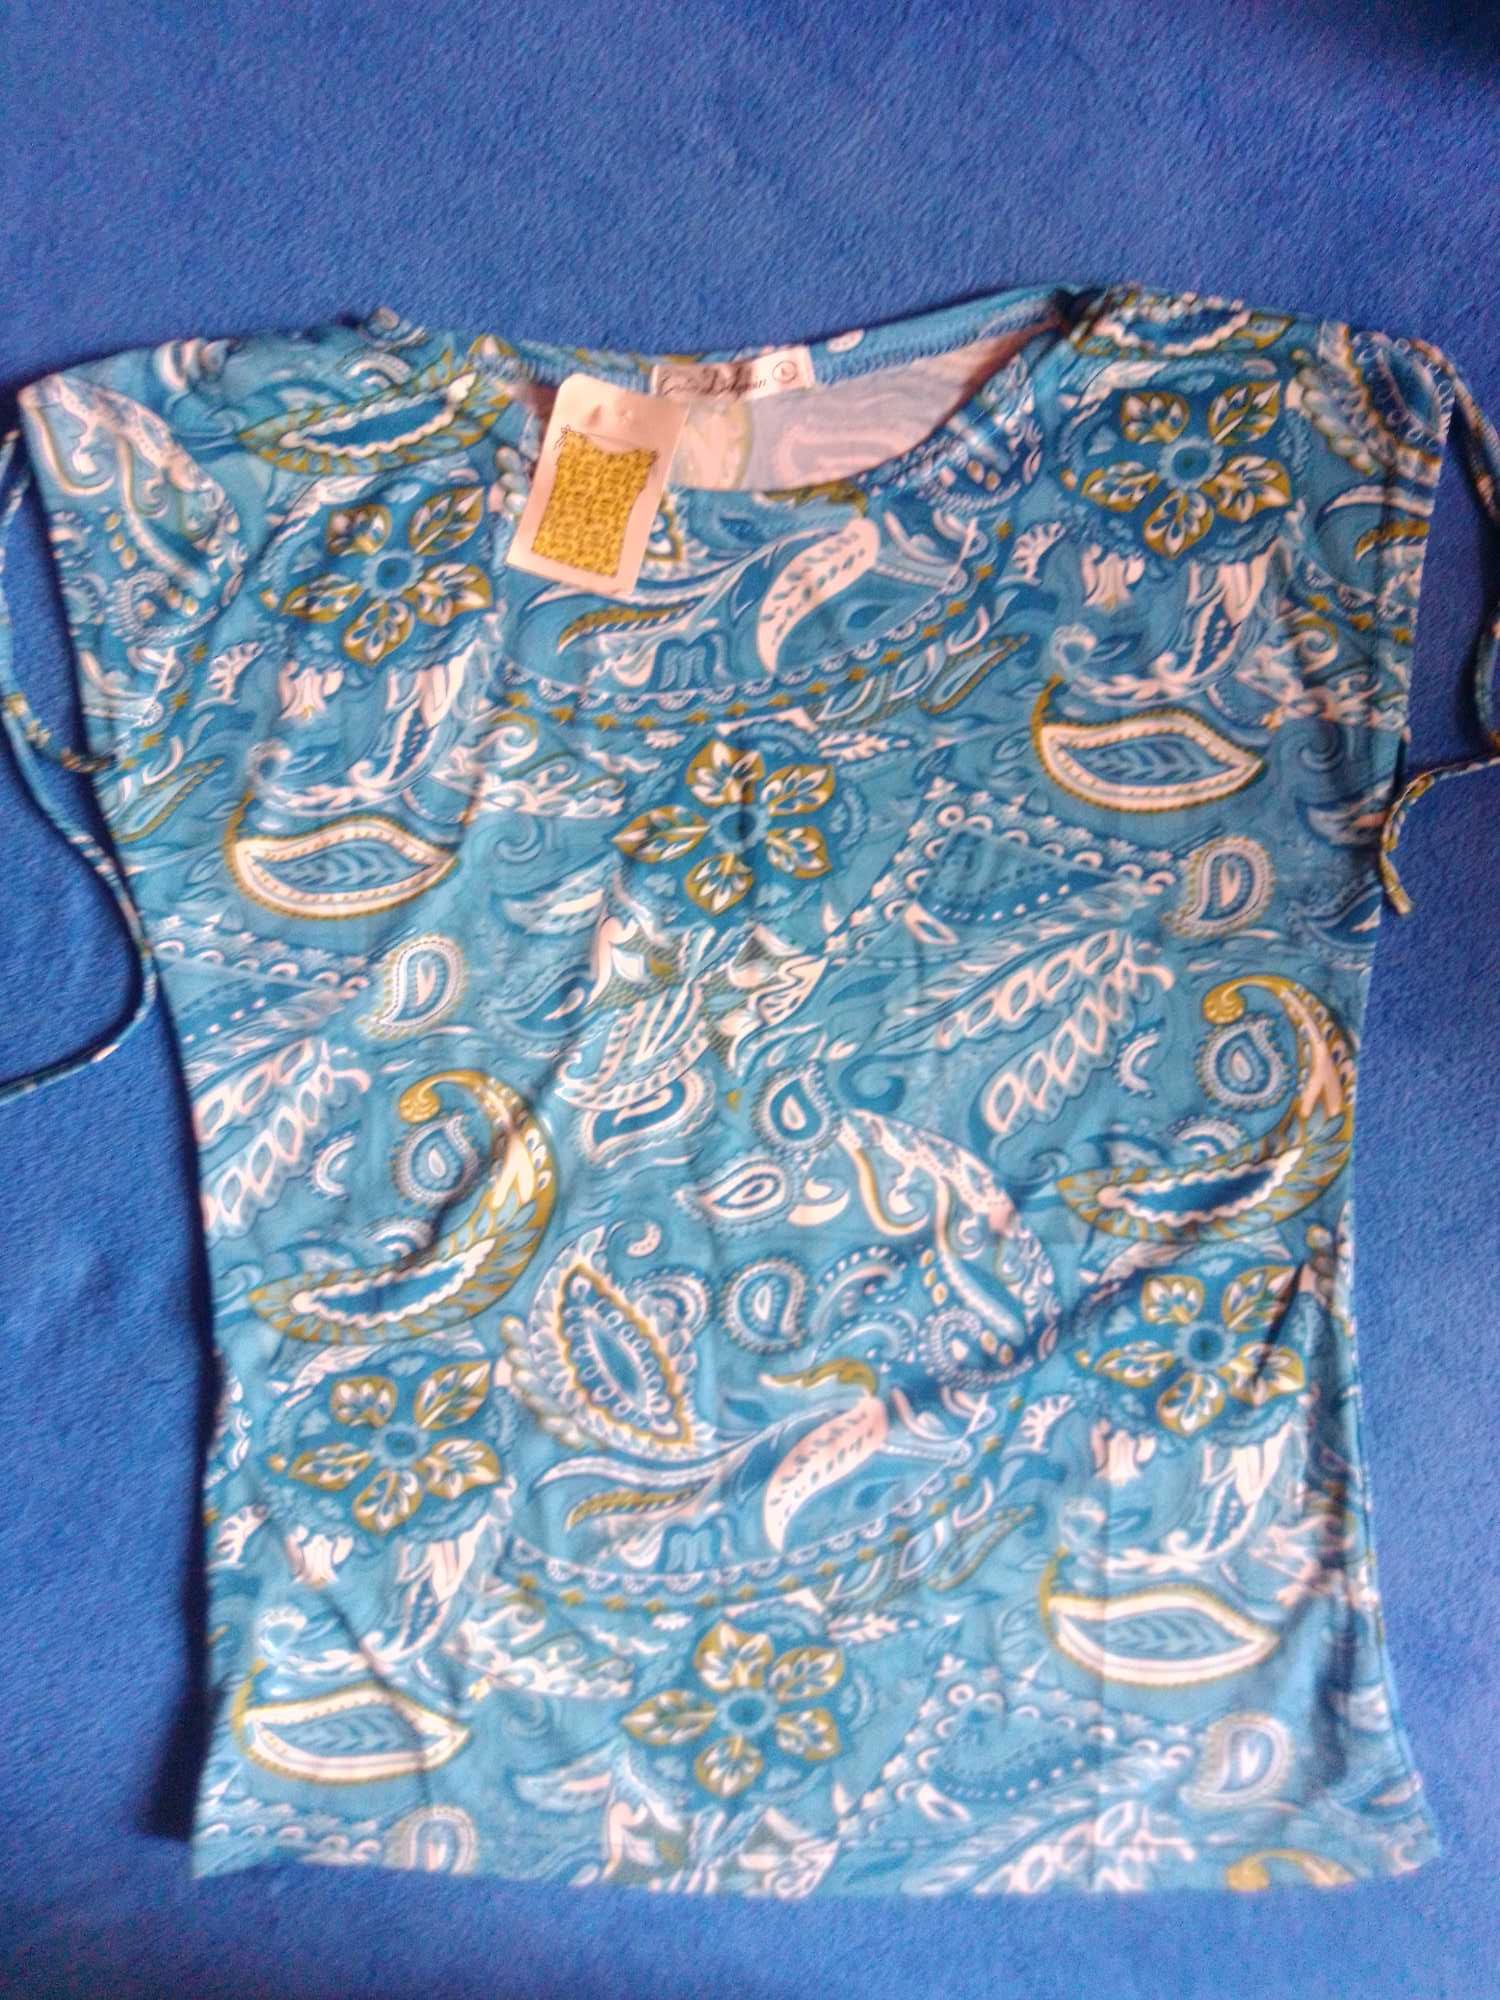 Lekka bluzka koszulka NOWA kolorowa niebieska wzór bawełna lato